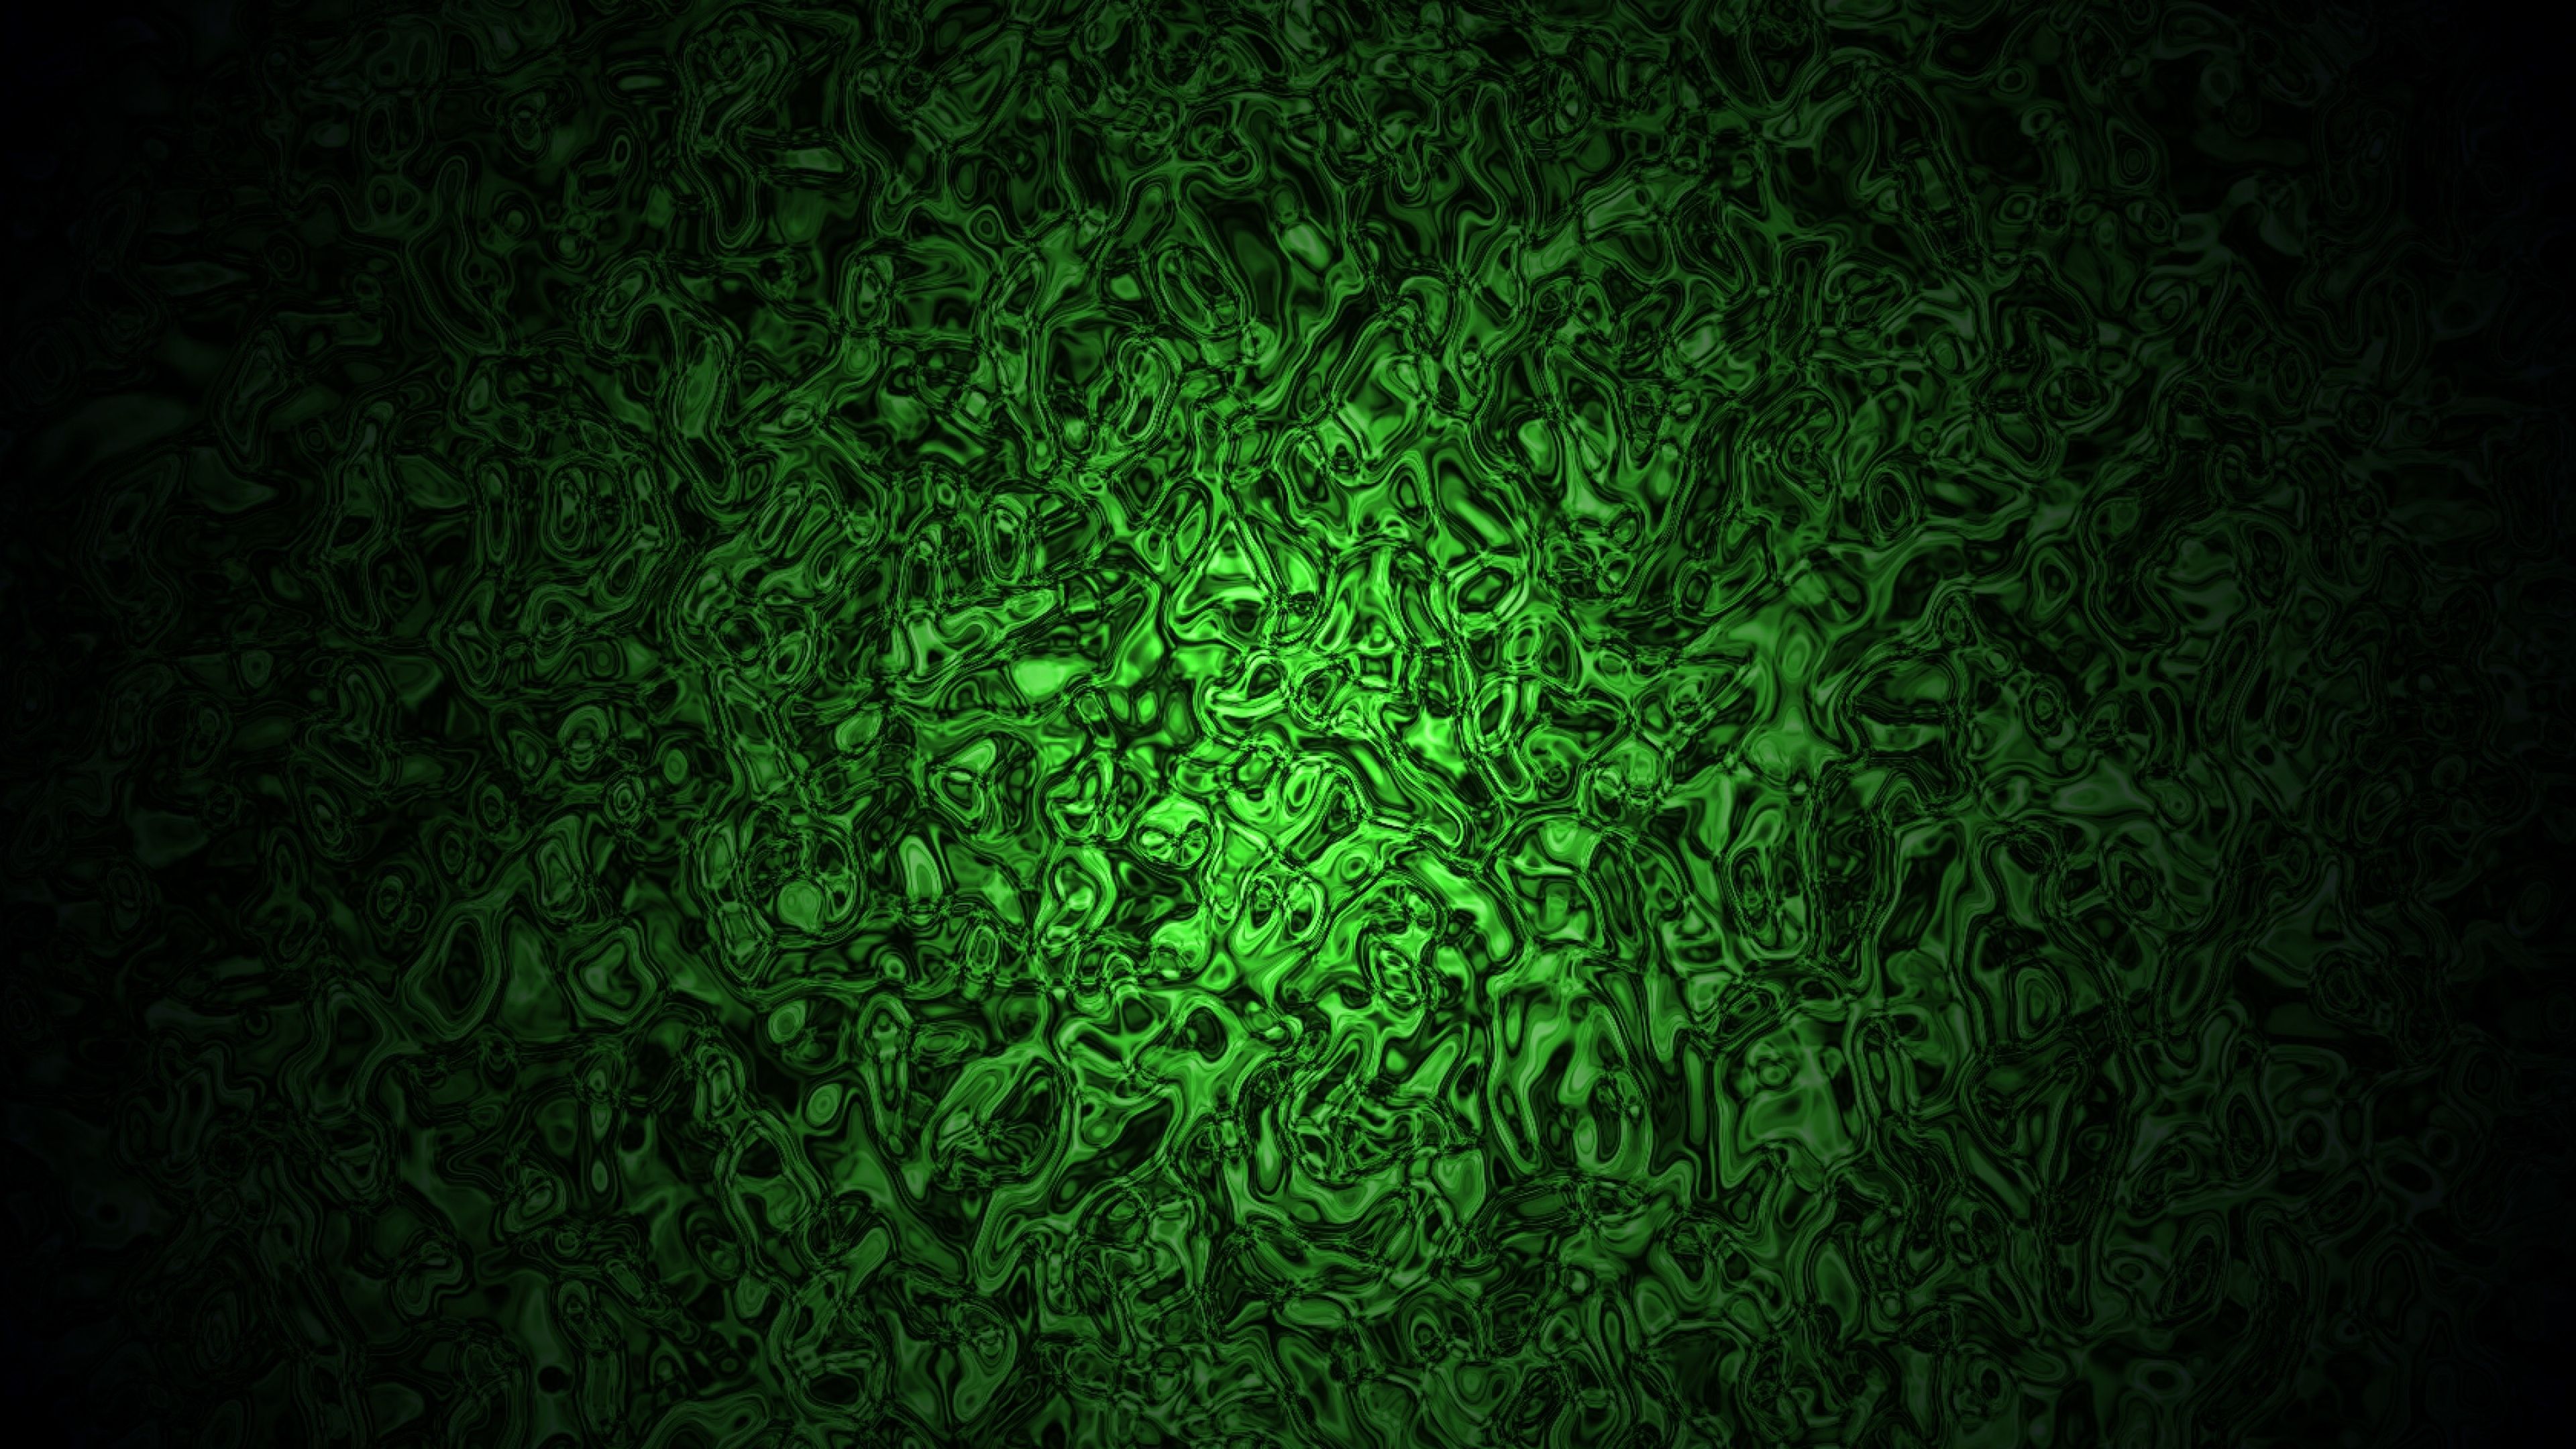 Dark Green Wallpaper Free.com. Dark green wallpaper, Dark green background, Slime wallpaper